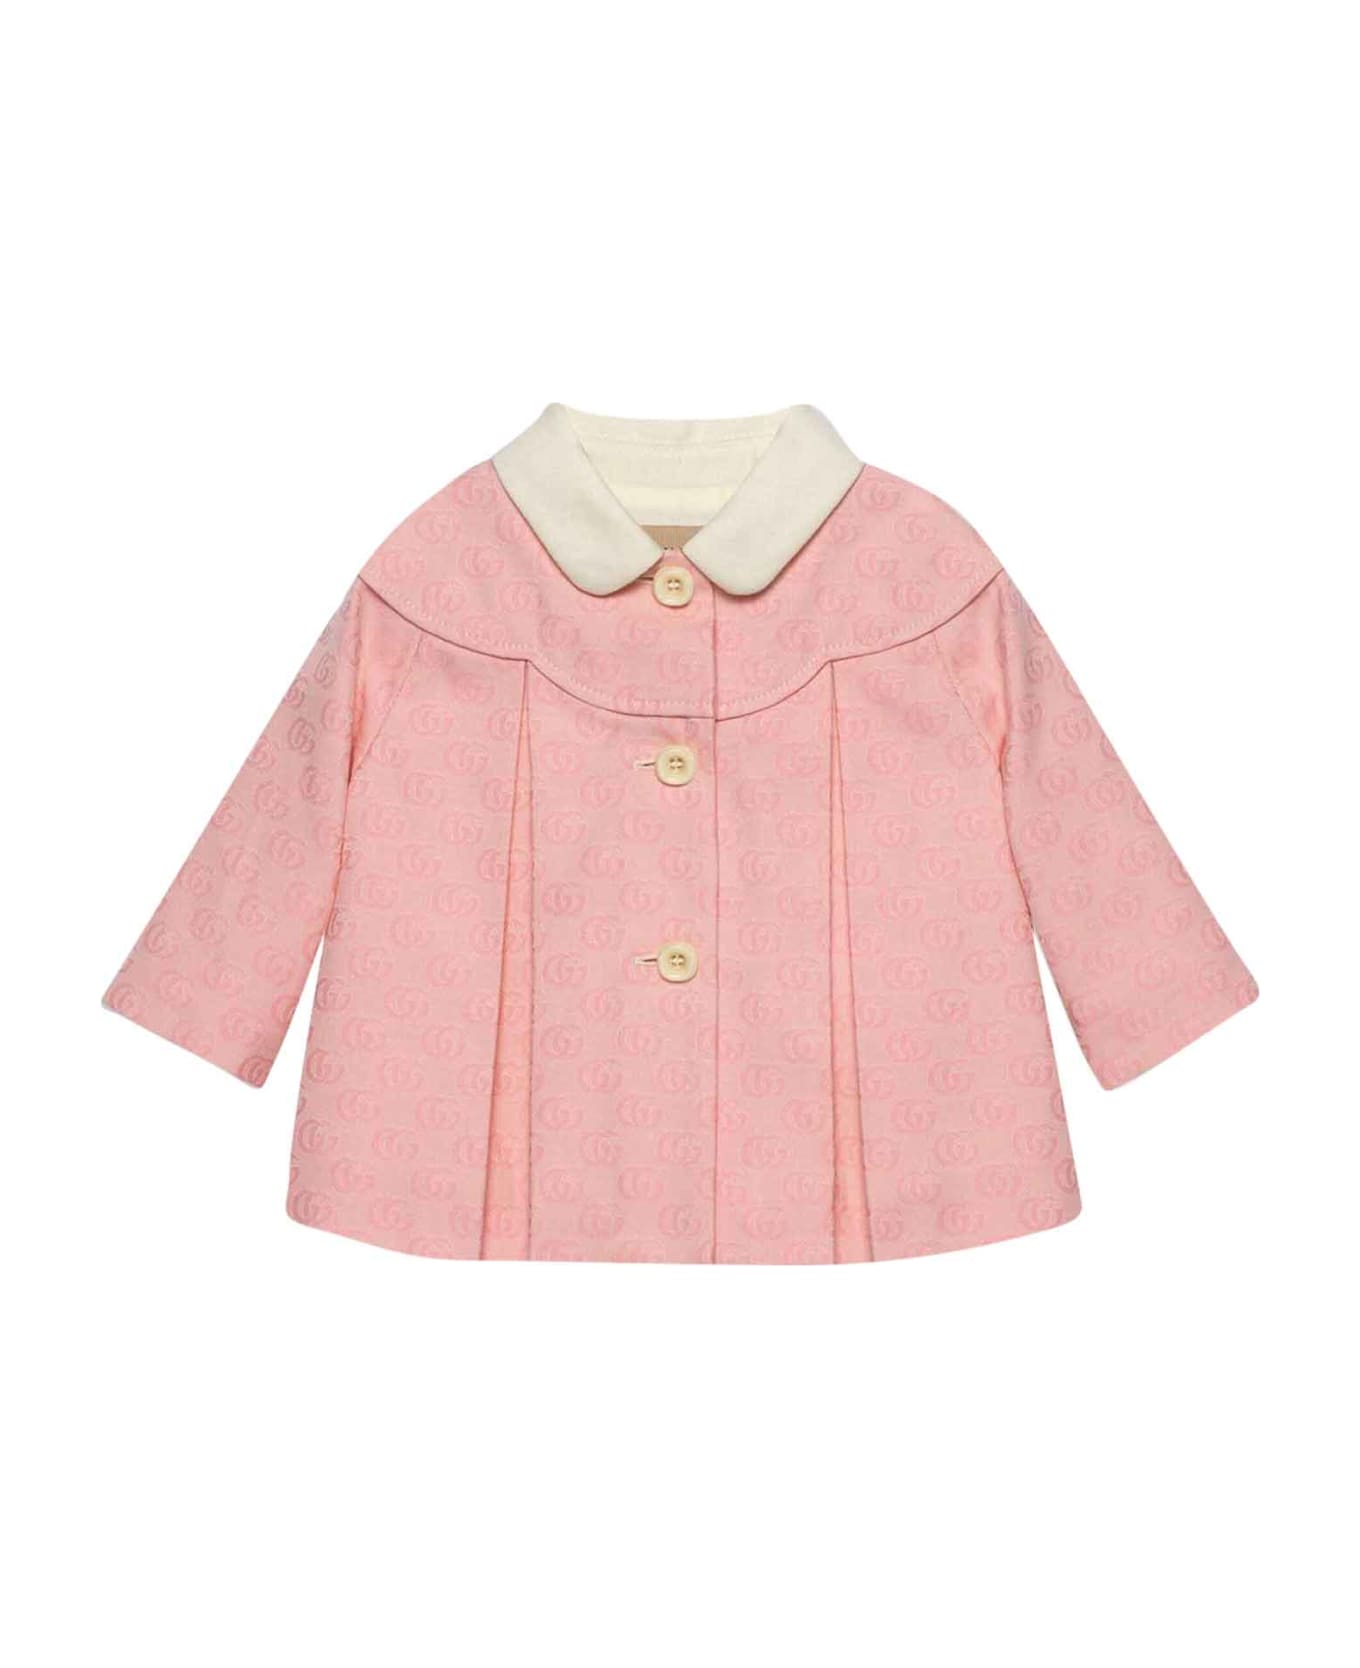 Gucci Pink Coat Baby Girl - Rosa